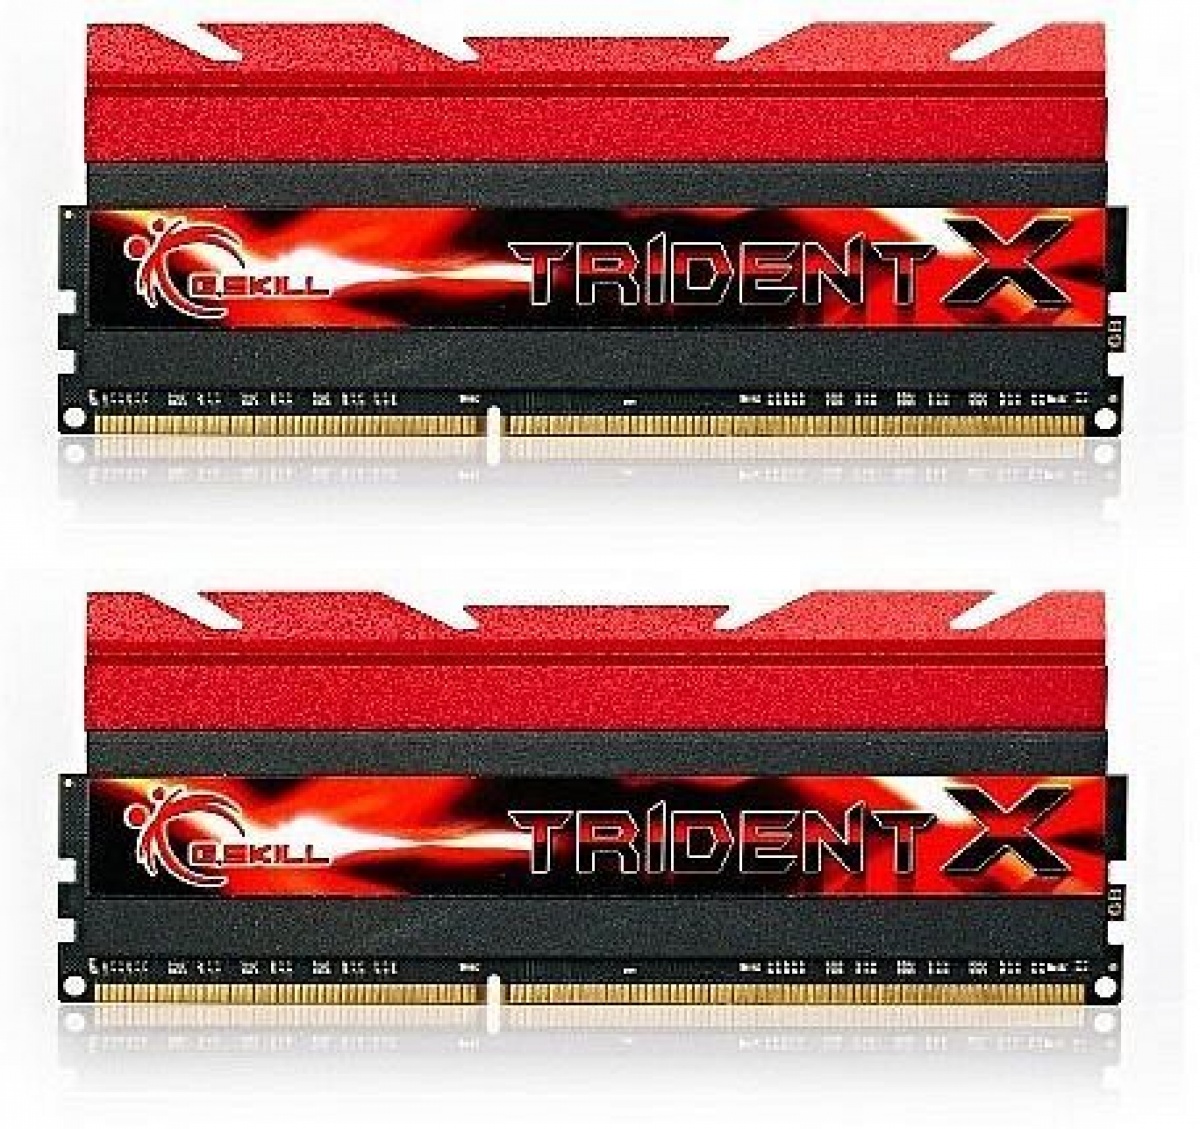 Memorie DDR3, 2400mhz, 16GB, C10 TriX K2, 1.65V